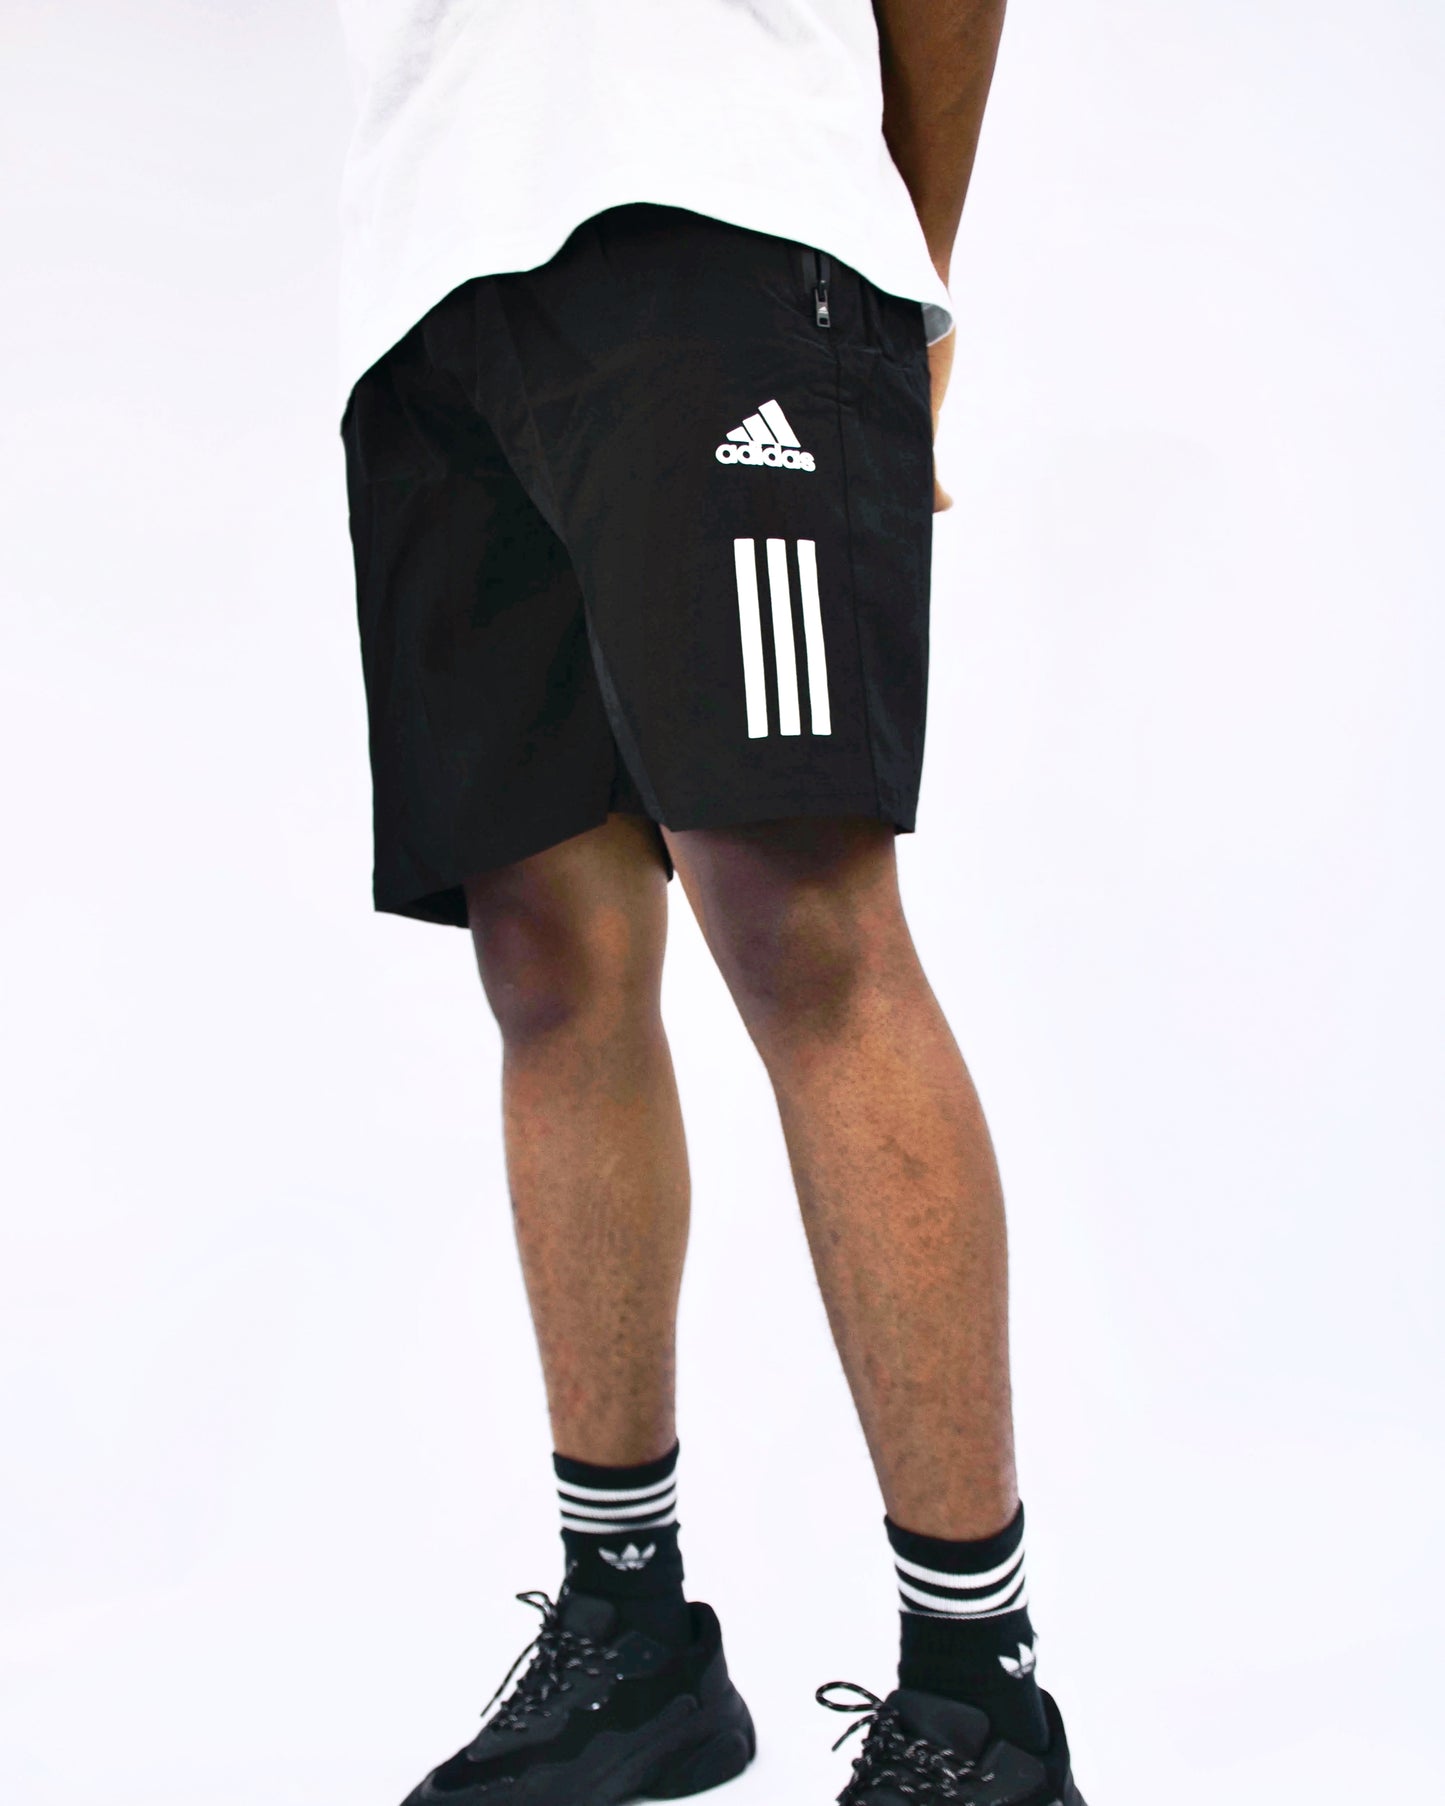 Adidas side stripe logo shorts in black